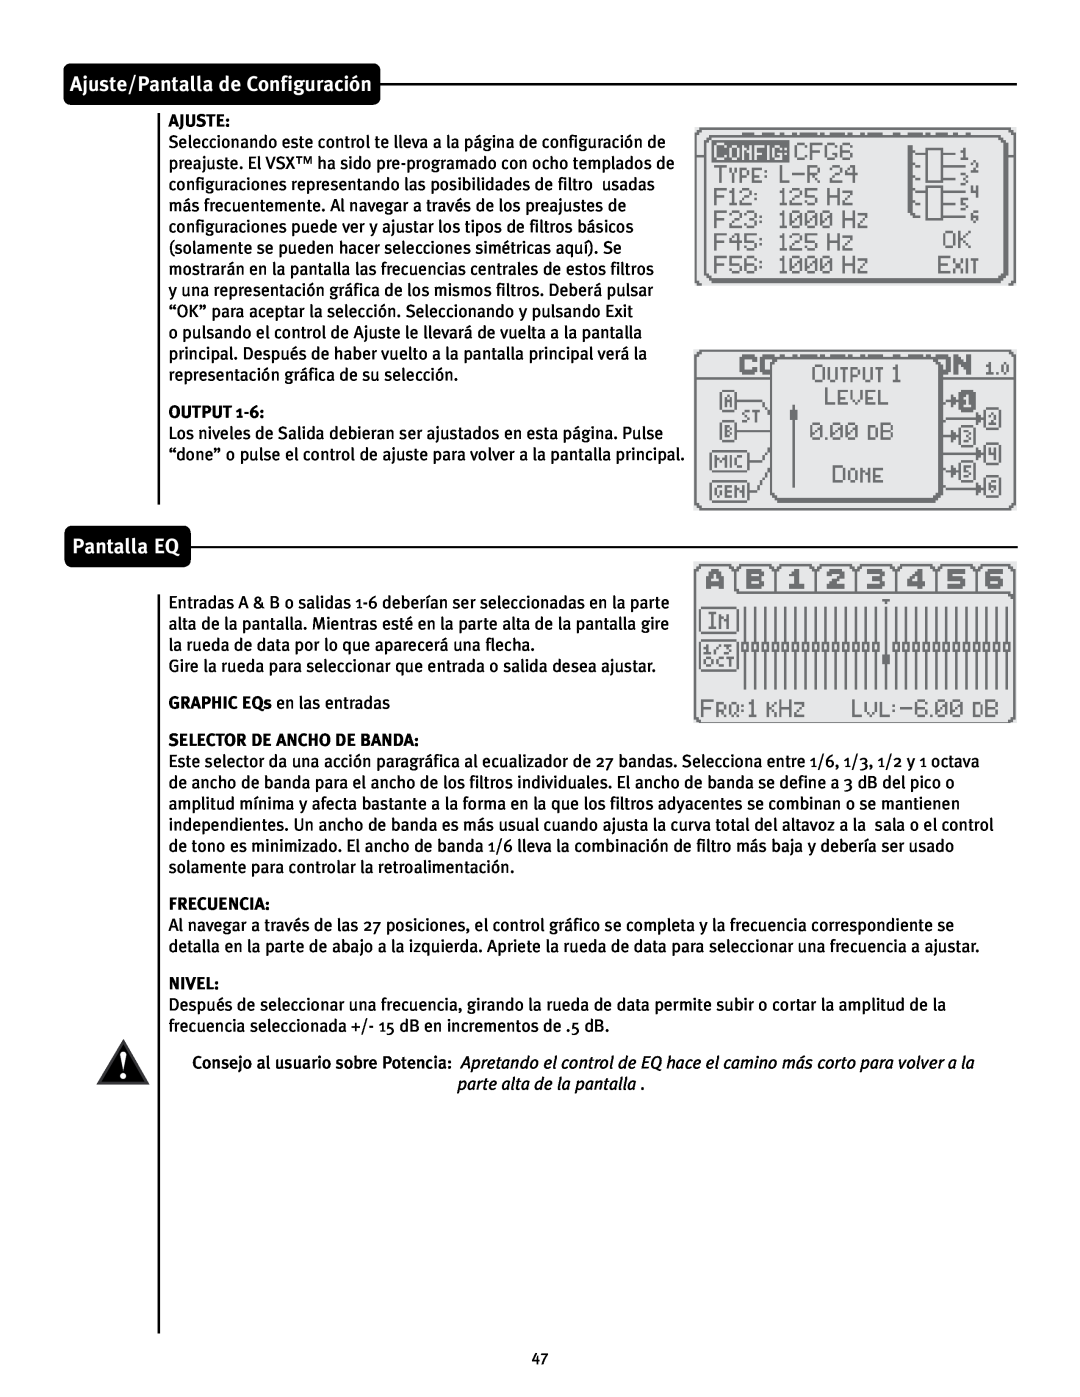 Peavey 26 manual Pantalla EQ, Ajuste/Pantalla de Configuración, Output, Selector De Ancho De Banda, Frecuencia, Nivel 